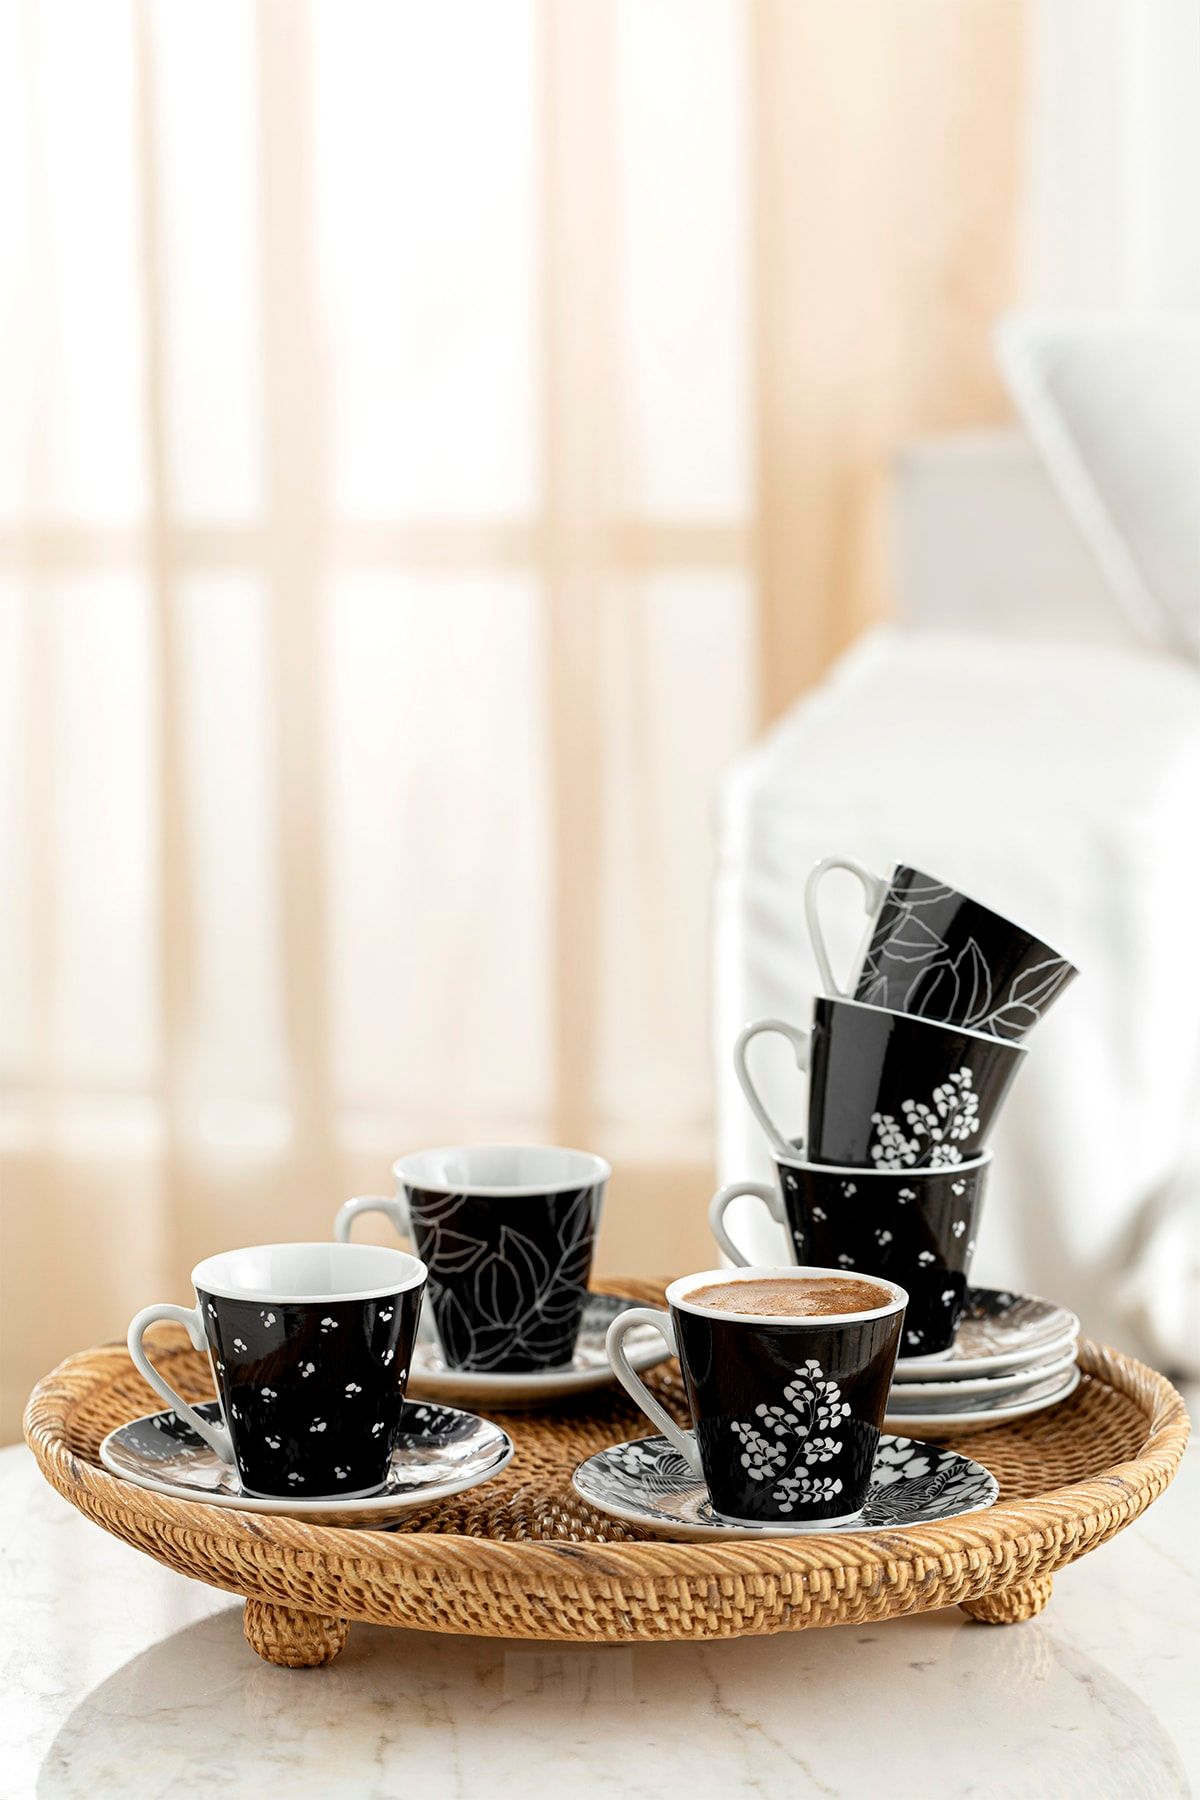 English Home Prezzie Porselen 6 Kişilik Kahve Fincan Takımı 80 Ml Siyah